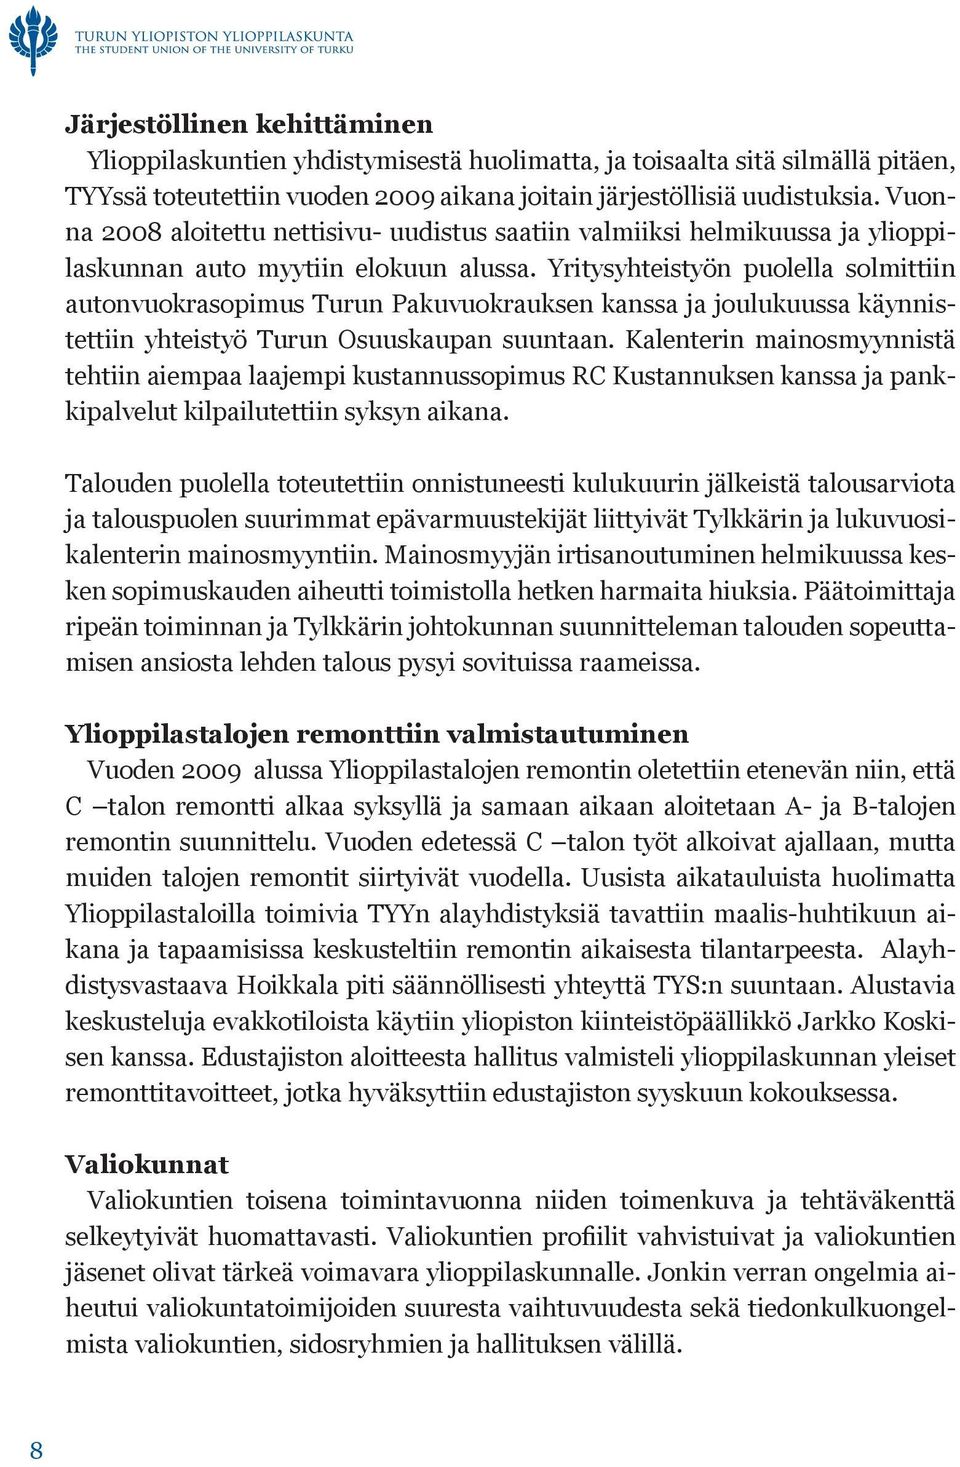 Yritysyhteistyön puolella solmittiin autonvuokrasopimus Turun Pakuvuokrauksen kanssa ja joulukuussa käynnistettiin yhteistyö Turun Osuuskaupan suuntaan.